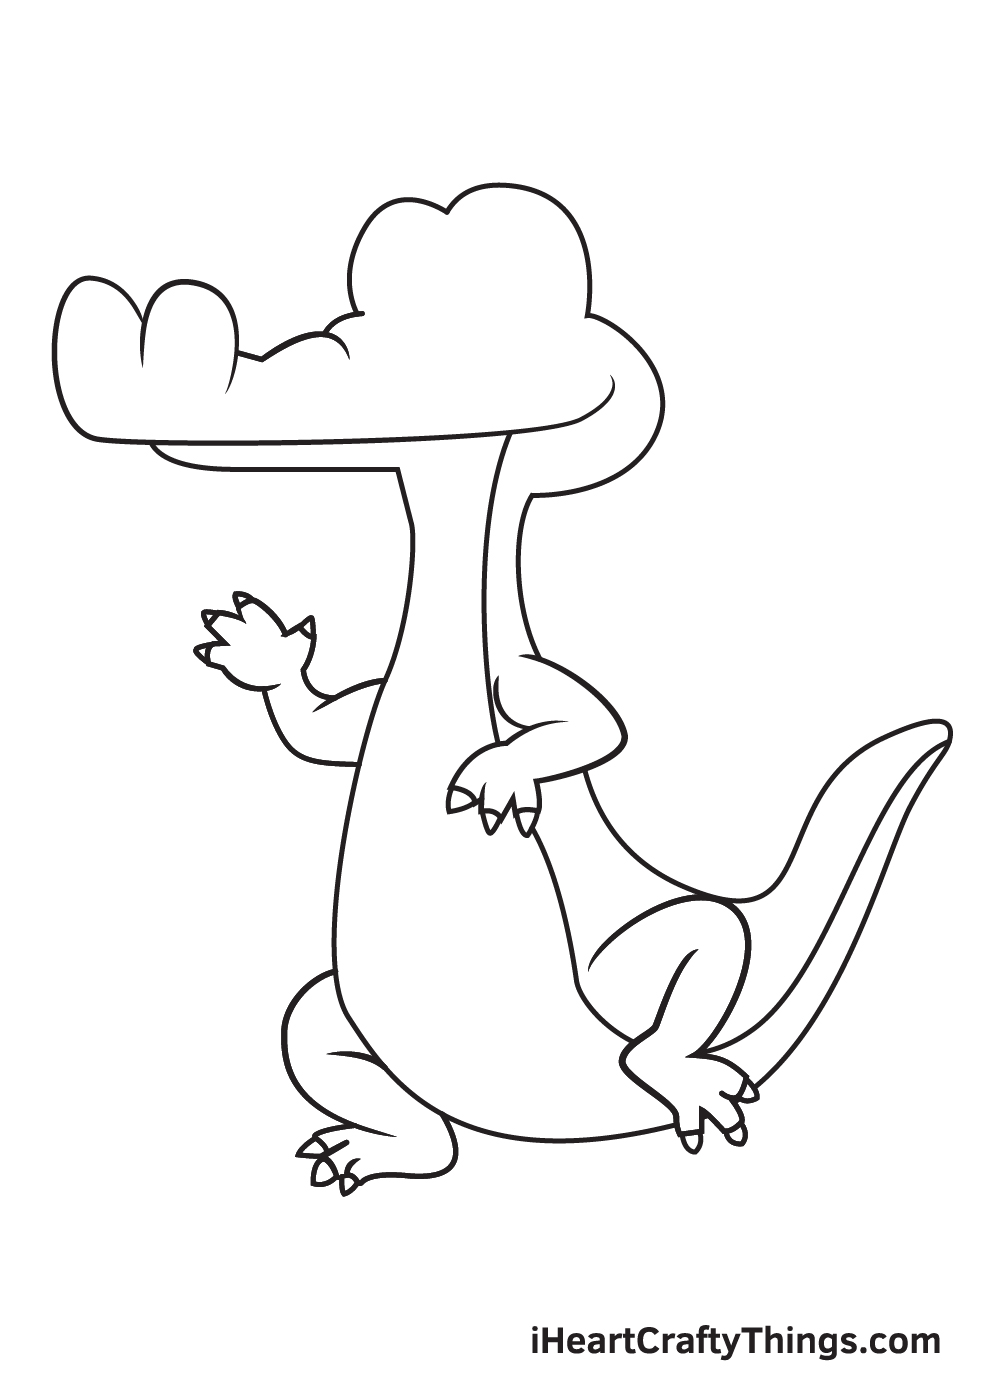 Vẽ cá sấu - Bước 7